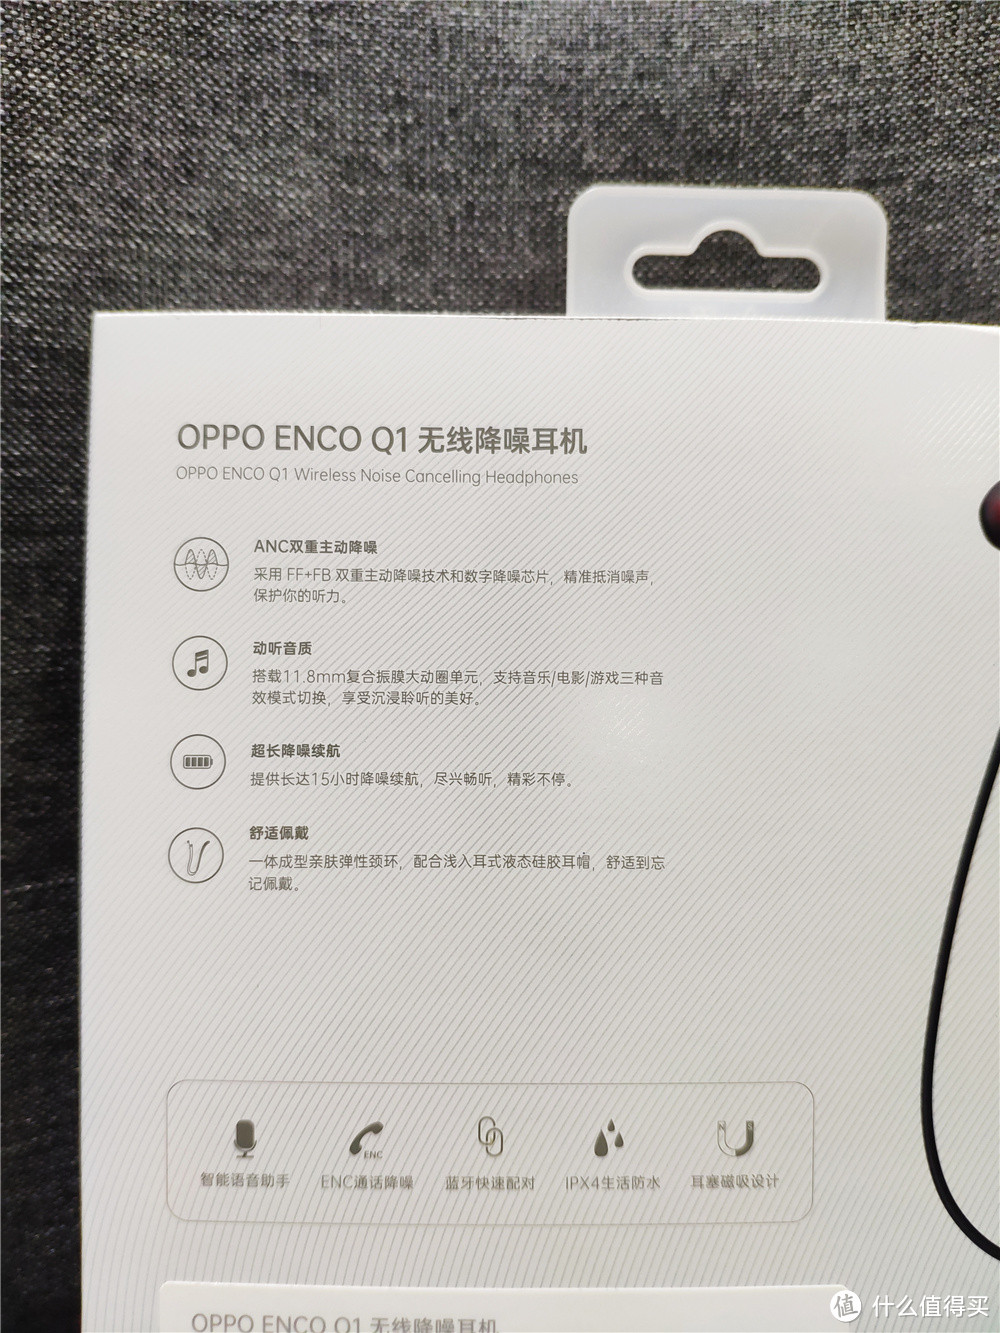 兼顾颜值与音质 降噪尚可 OPPO Enco Q1 极速评测